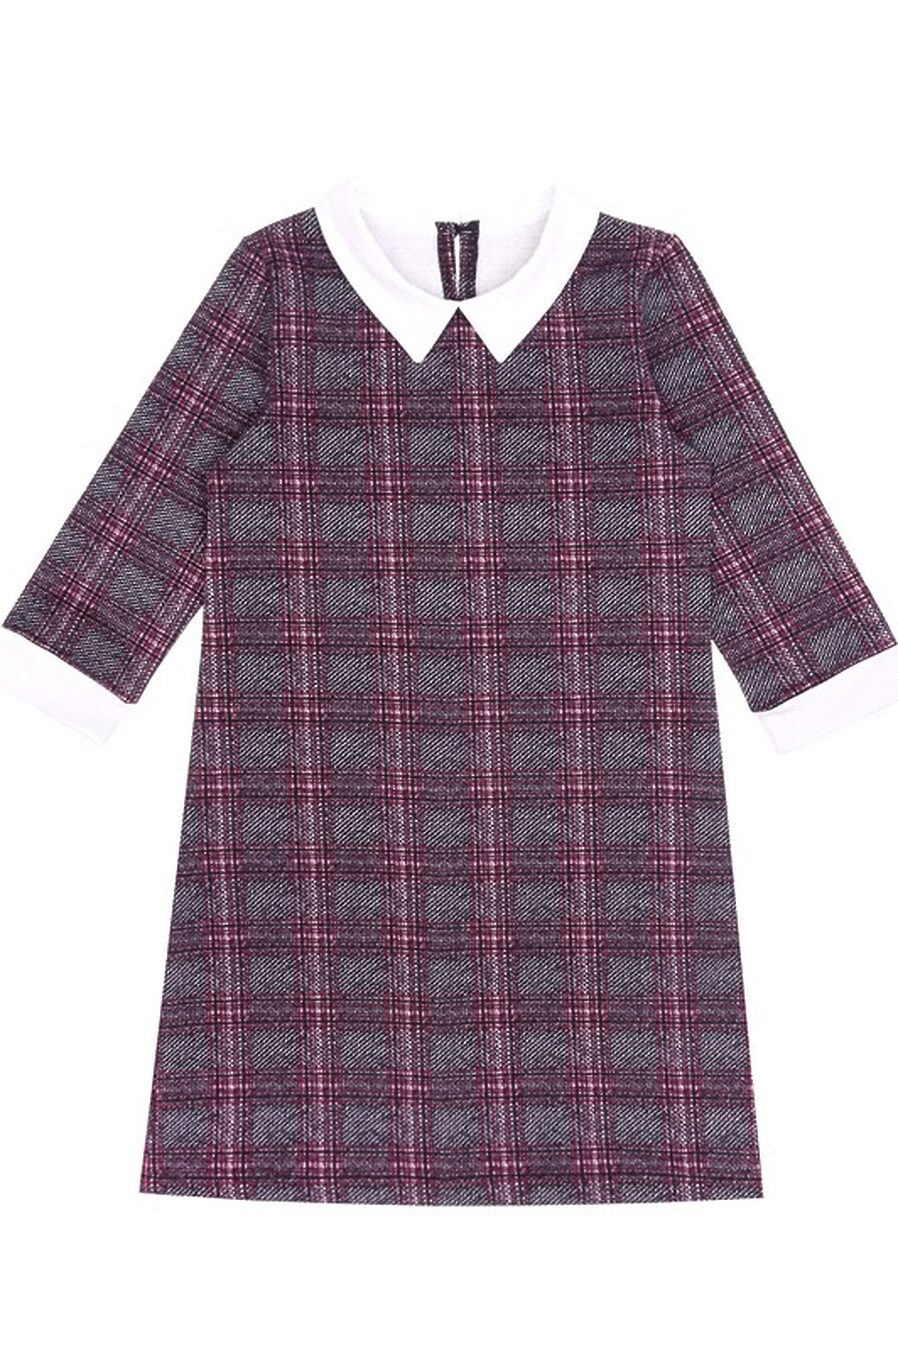 Платье для девочек АПРЕЛЬ 199351 купить оптом от производителя. Совместная покупка детской одежды в OptMoyo